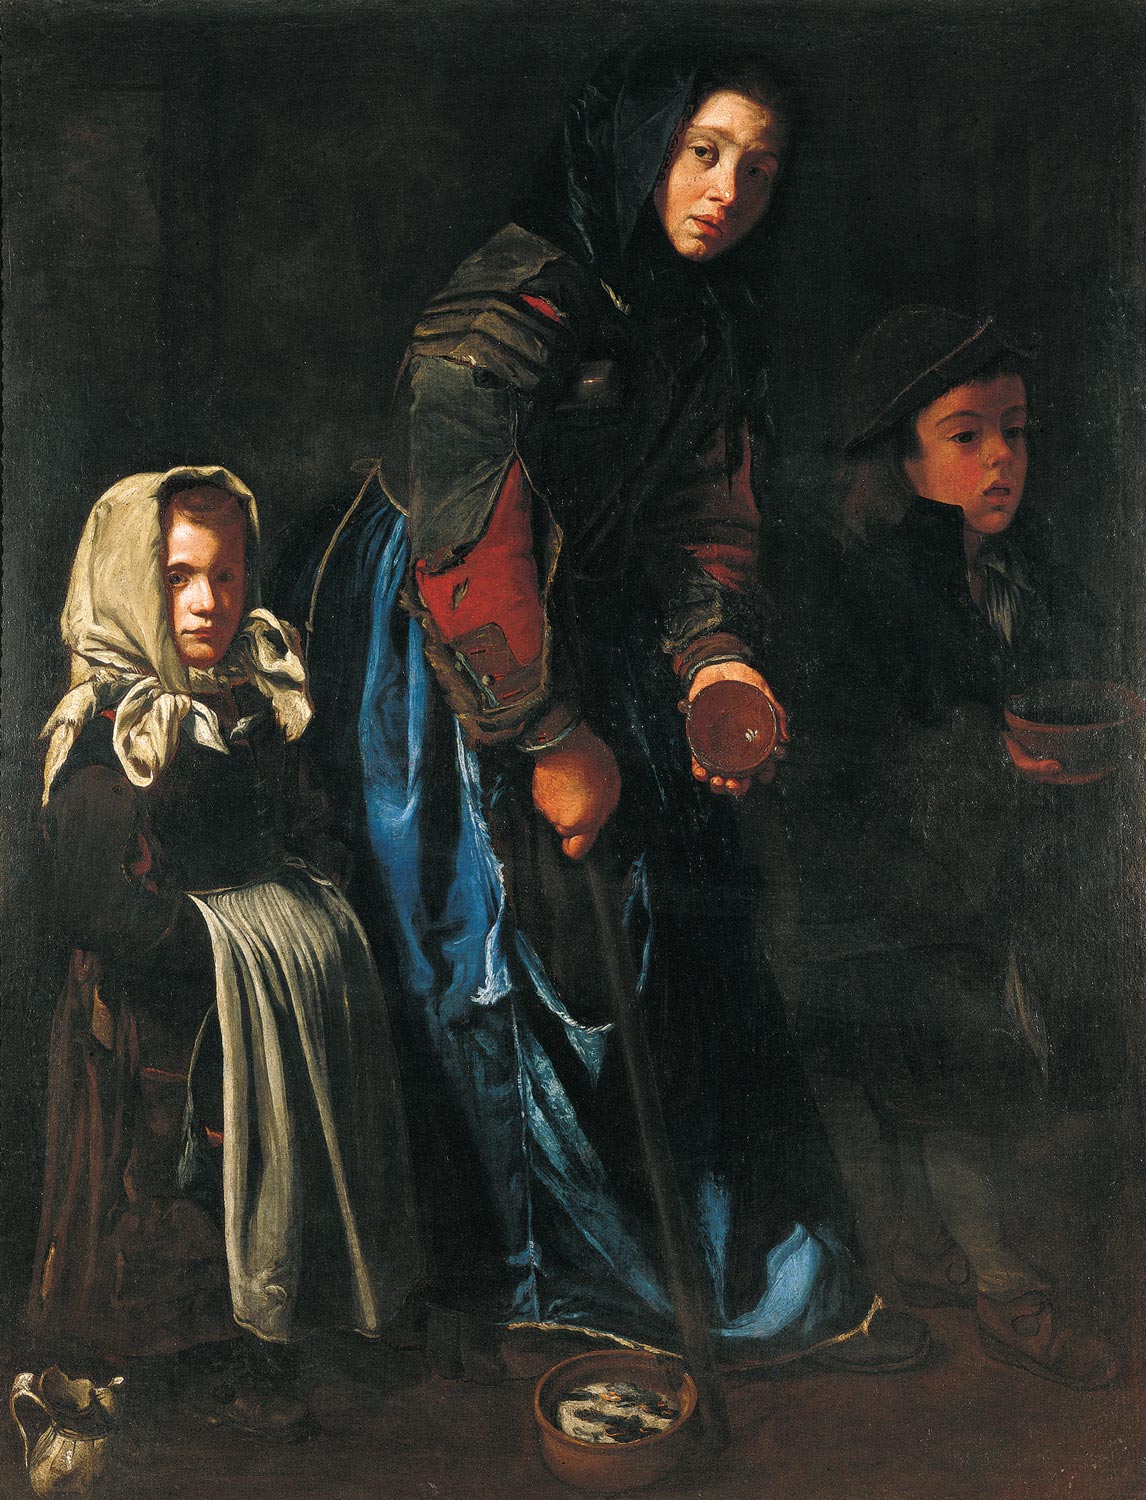 Maestro della tela jeans, Madre mendicante con due bambini (1675-1700 circa; olio su tela, 152 × 117 cm; Parigi, Galerie Canesso)